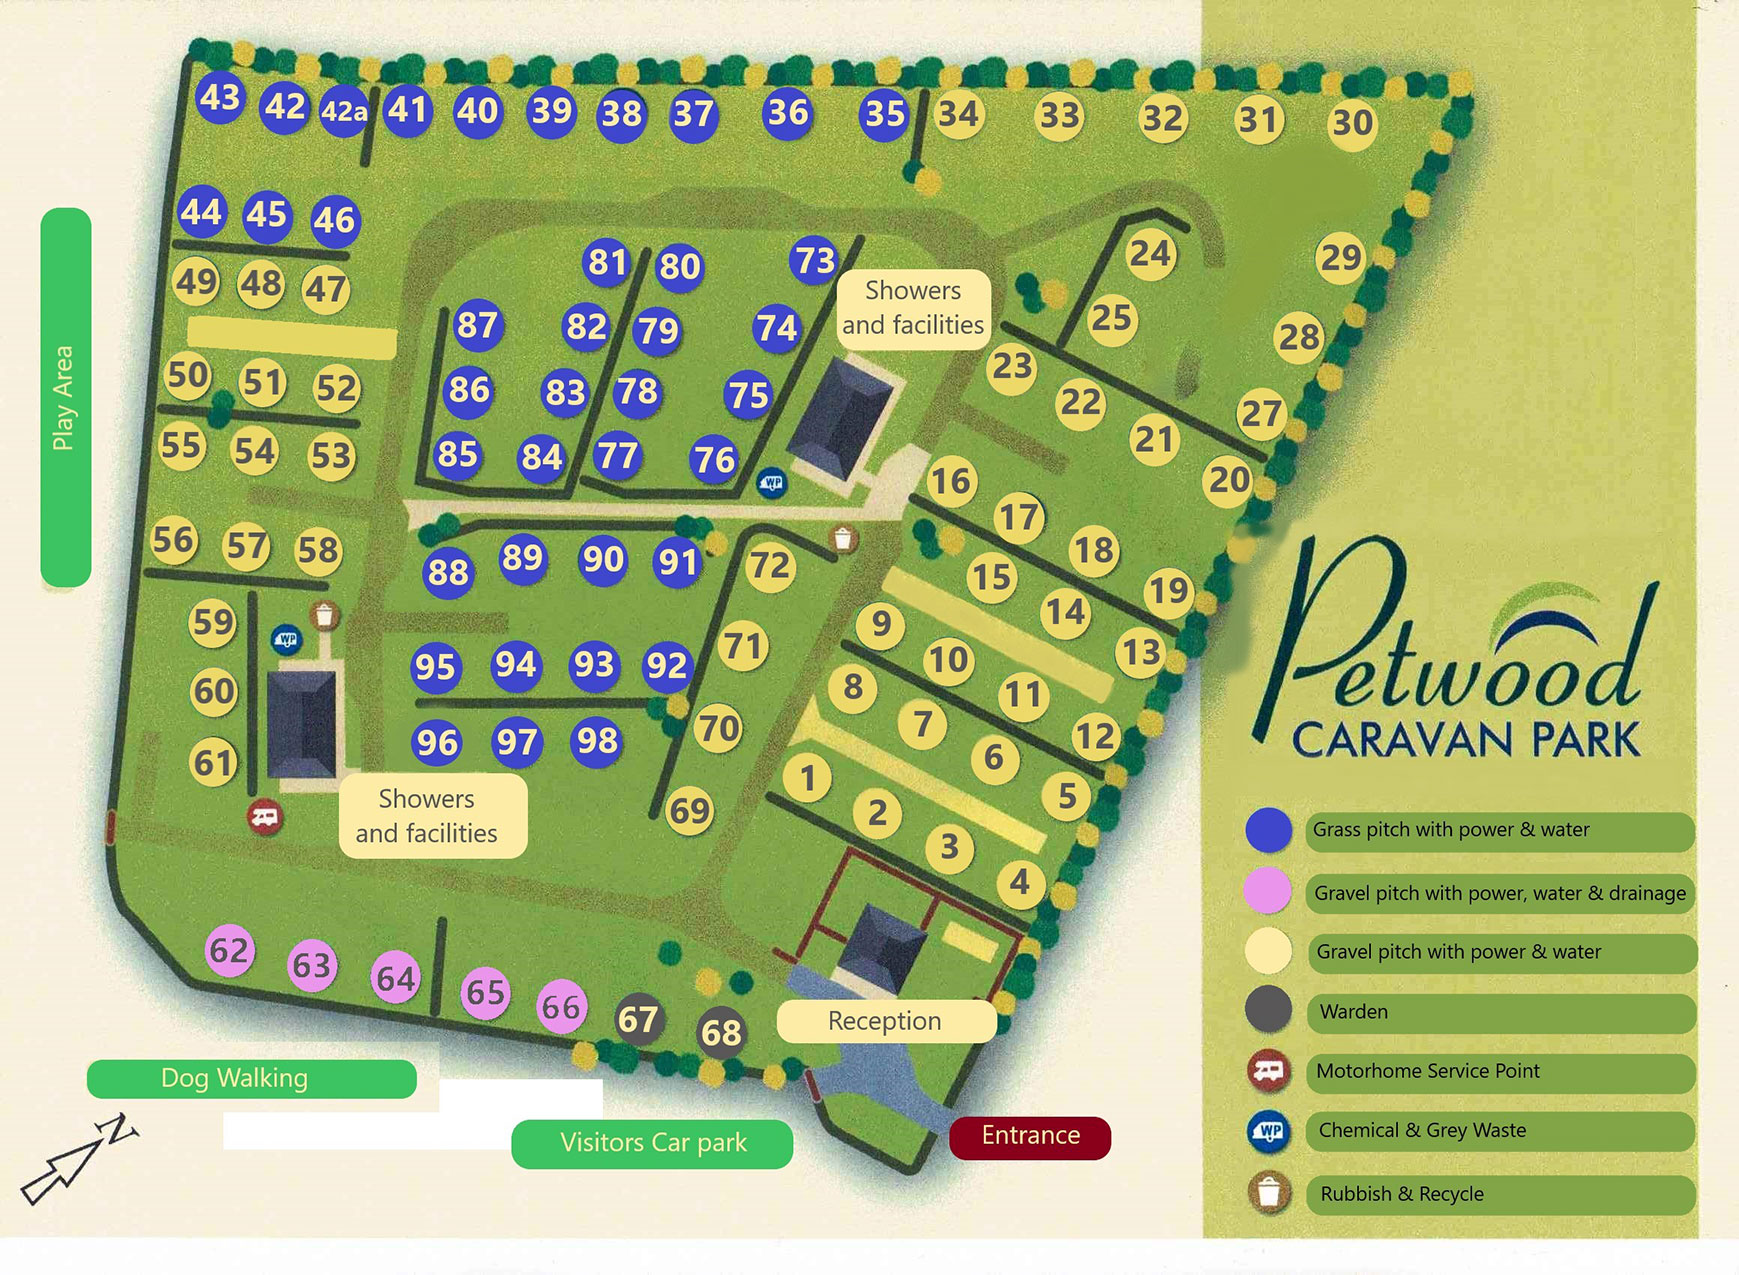 Petwood Caravan Park Site Map